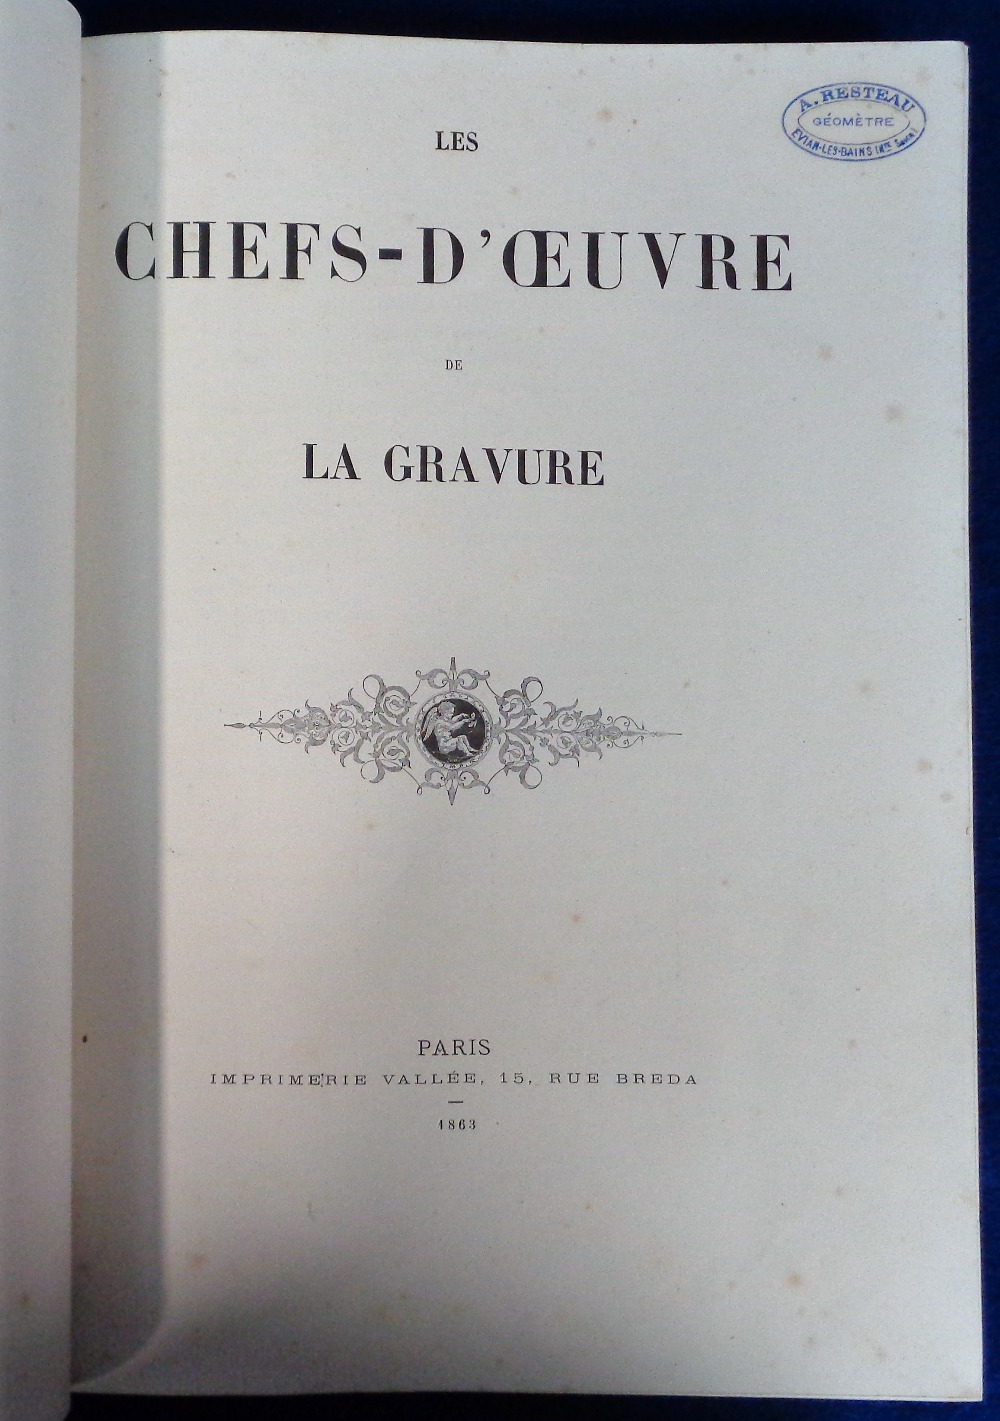 Antiquarian Book, 1863 Les Chefs-D'Oeuvre de La Gravure Paris Imprimerie Vallee, 15, Rue Breda, hard